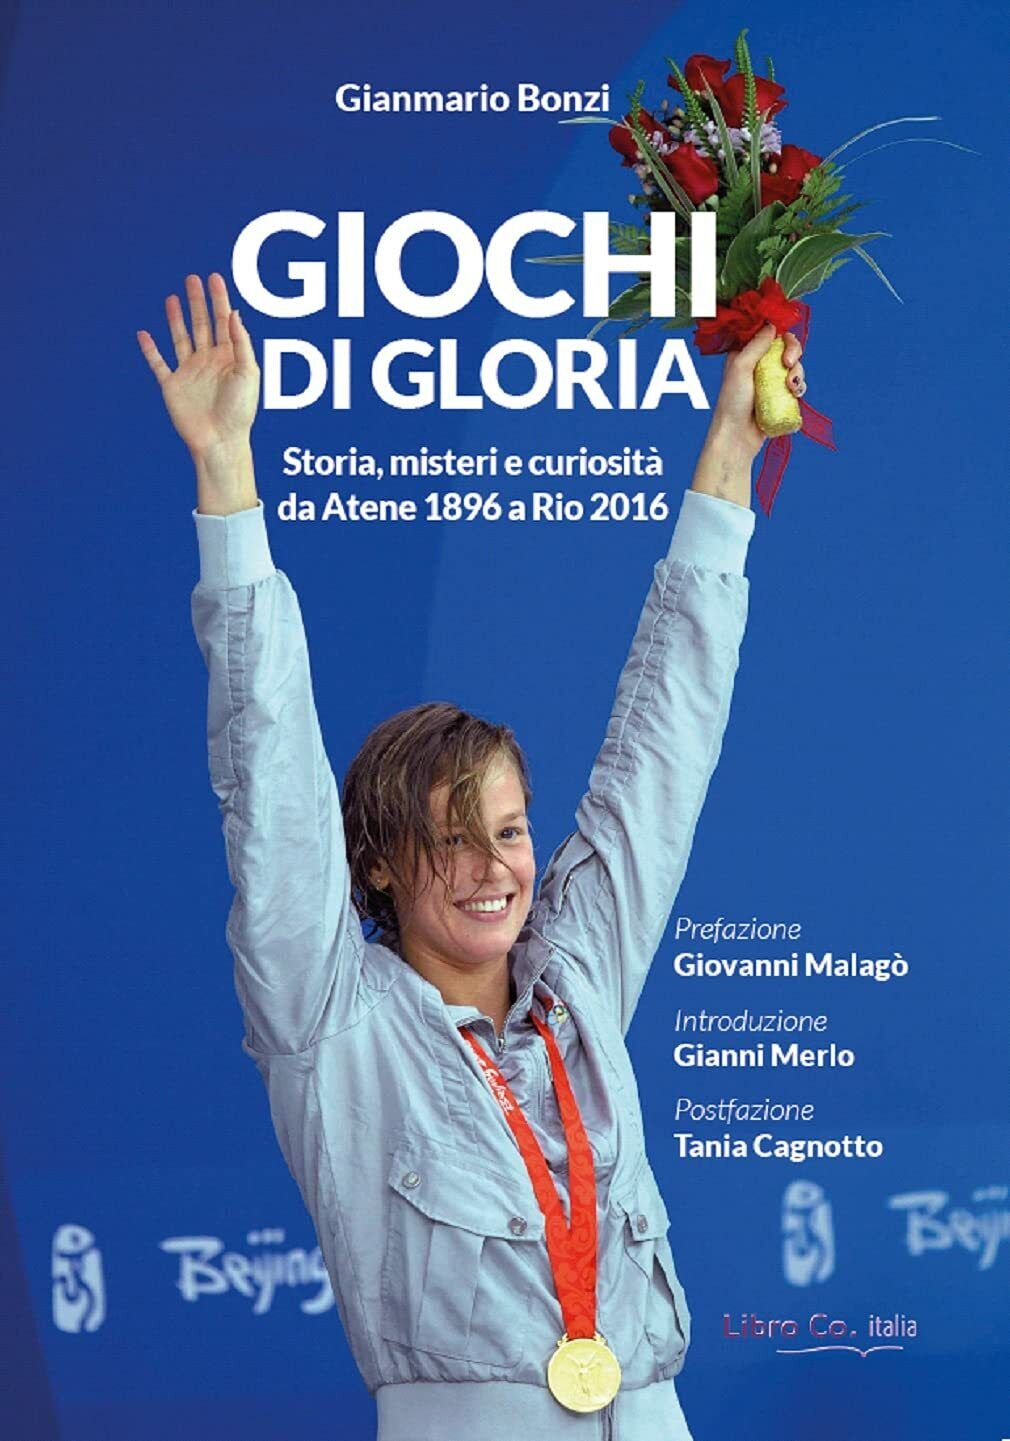 Giochi di gloria - Gianmario Bonzi - Libro Co. Italia, 2021